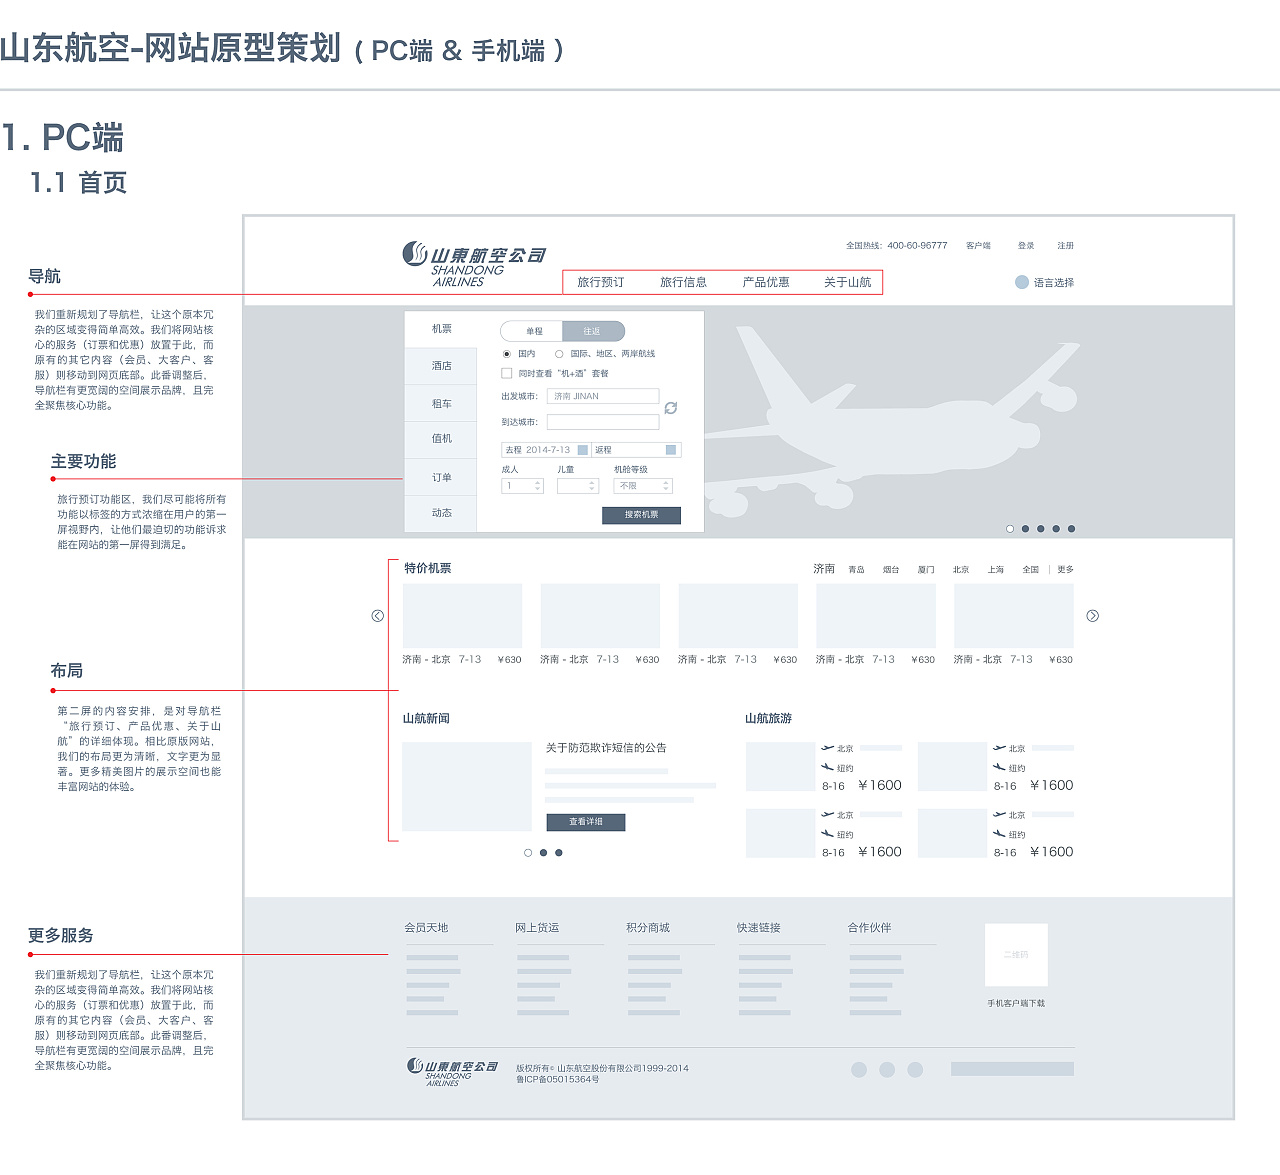 山东航空官网及订票流程原型设计